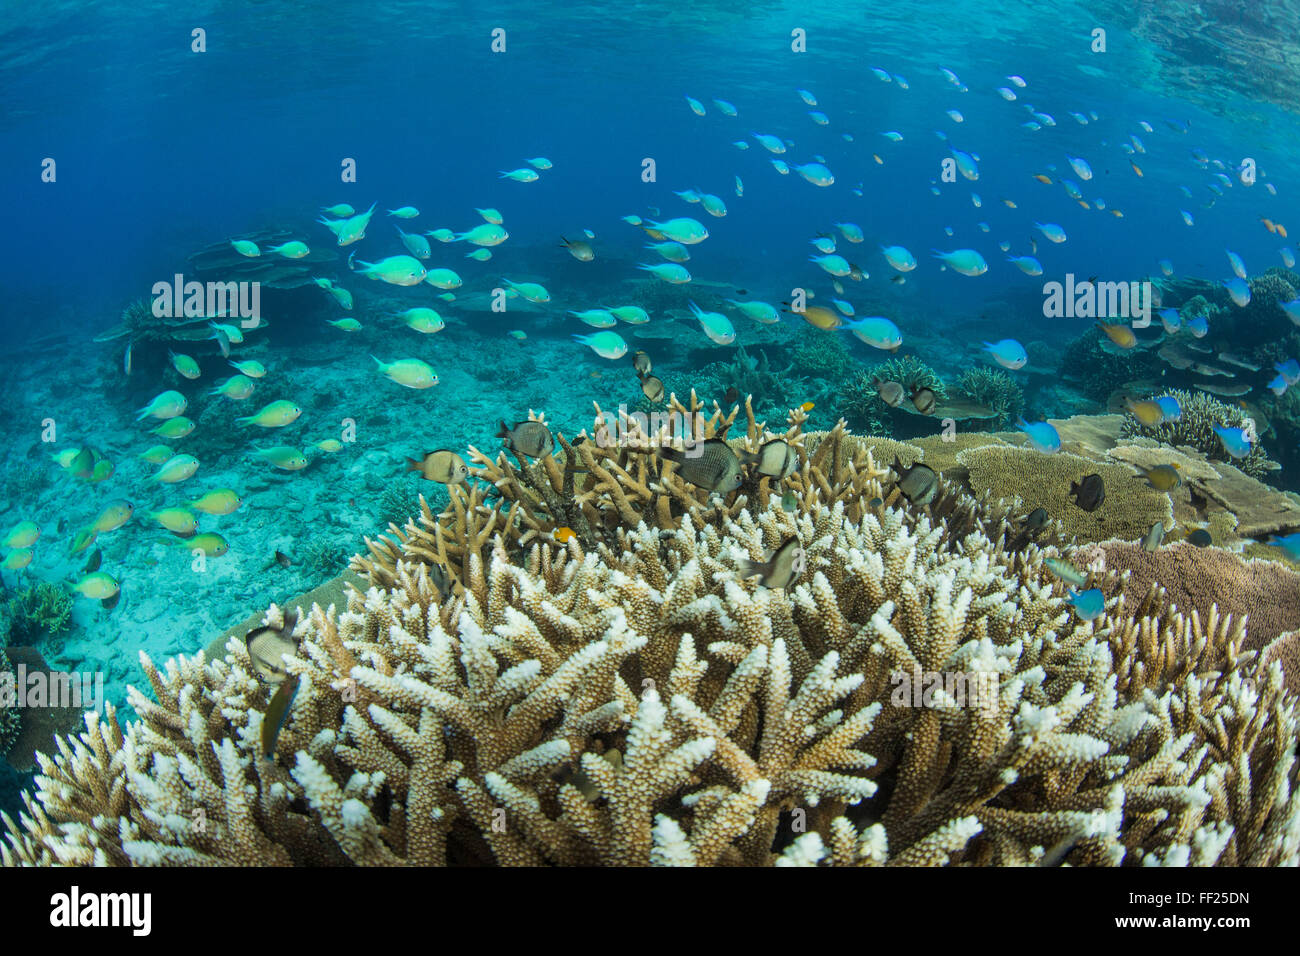 Peces de arrecife entre profusión de placa rígida en la isla de Pulau Setaih, Archipiélago Natuna, Indonesia, Sudeste Asiático, Asia Foto de stock